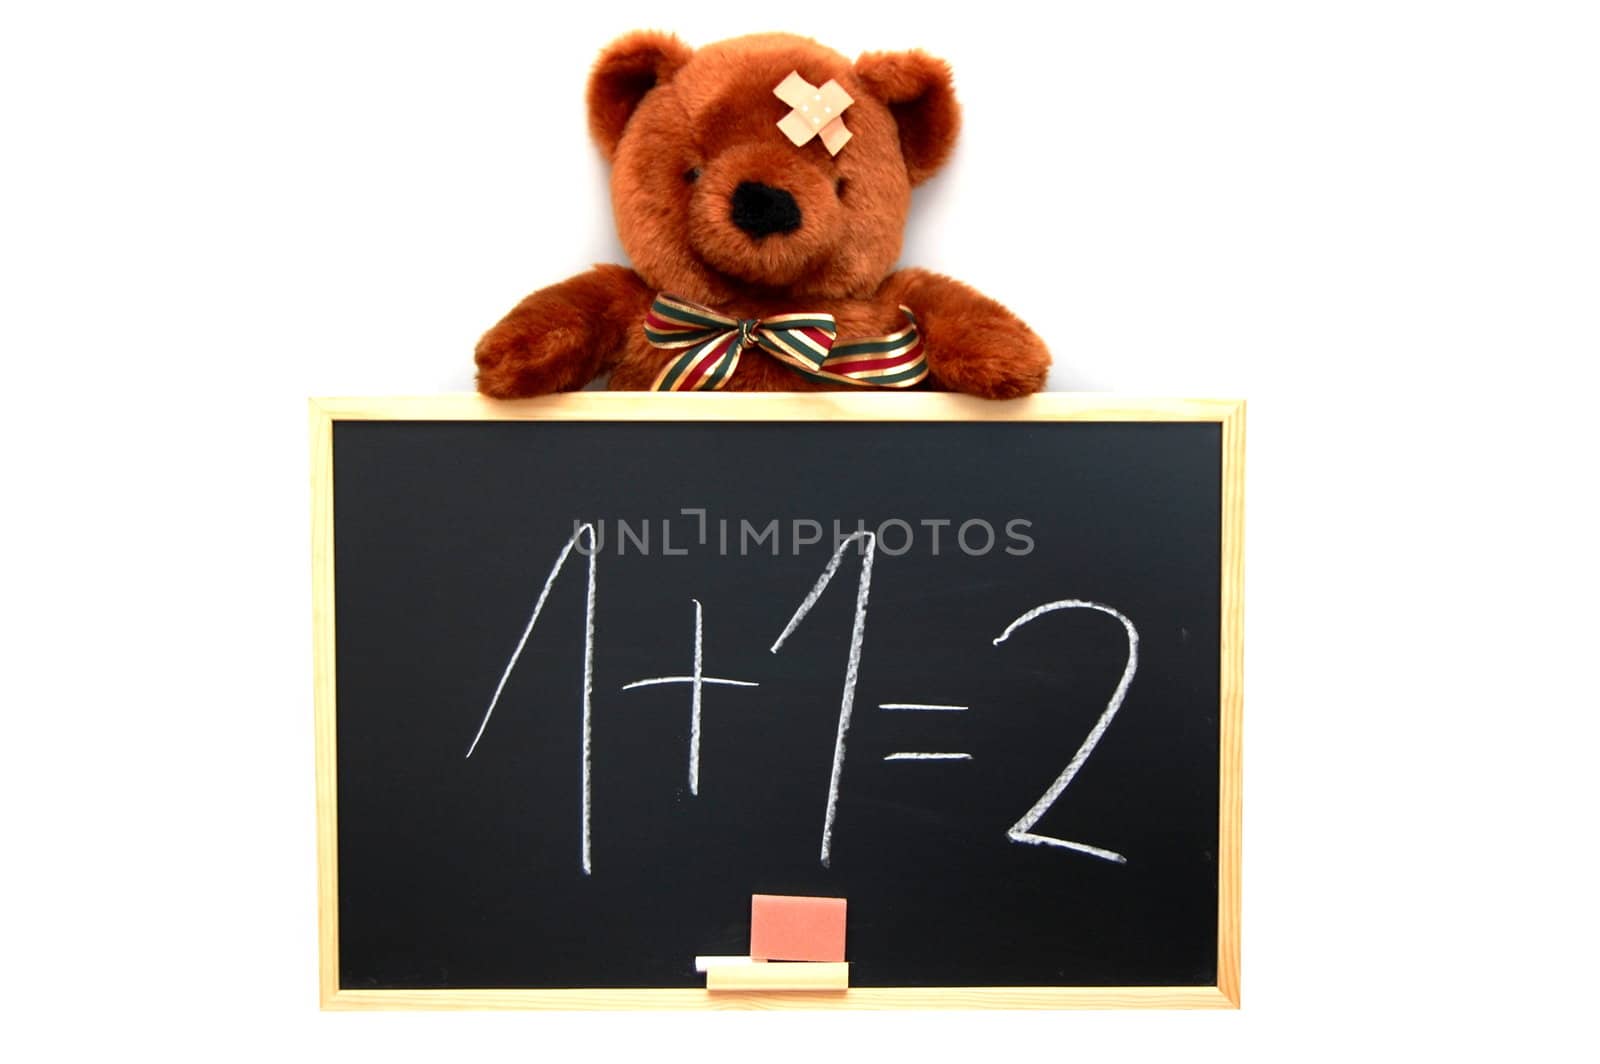 teddy and blackboard by gunnar3000